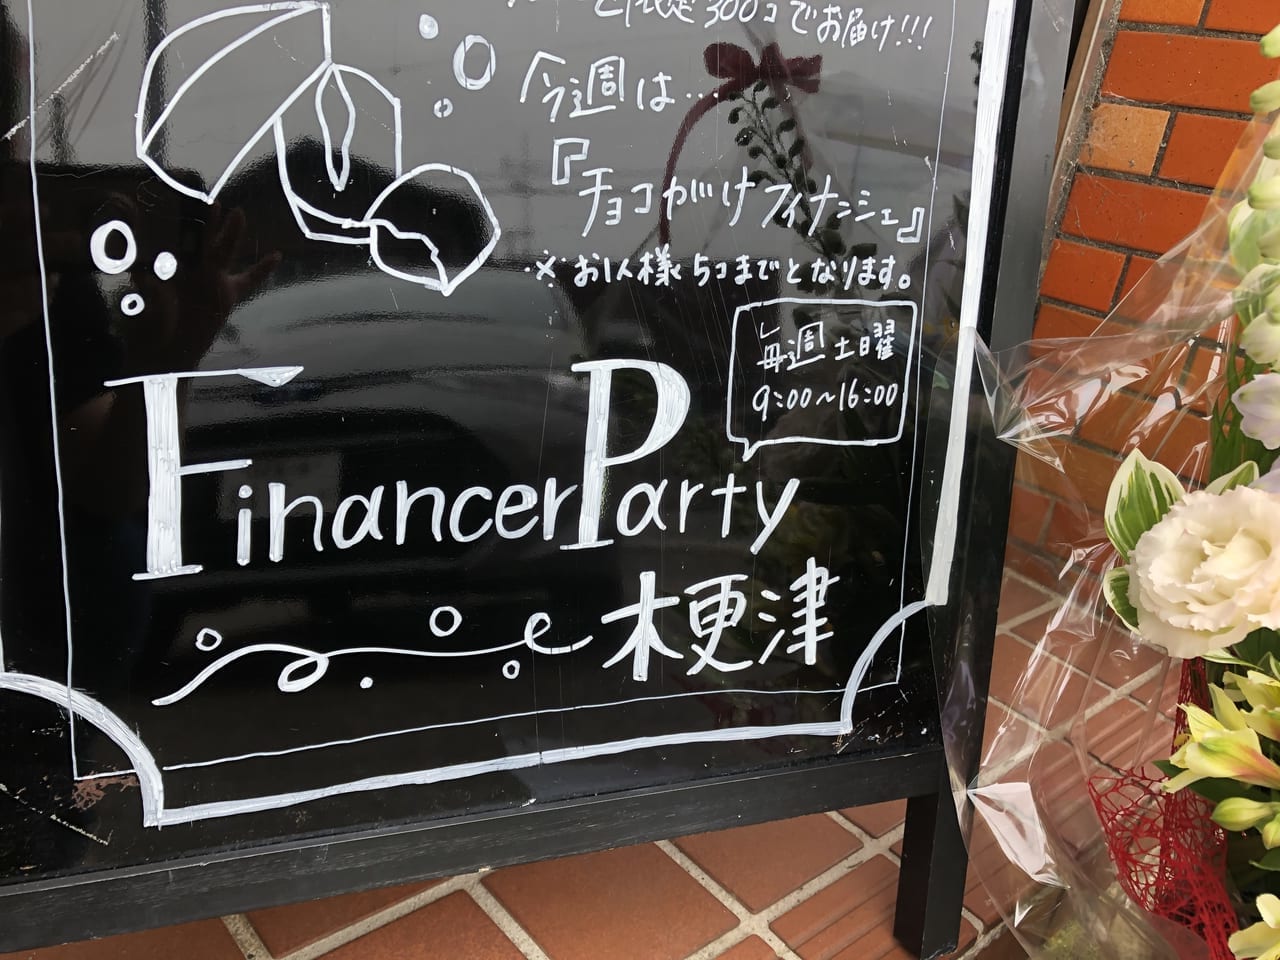 financierparty-3